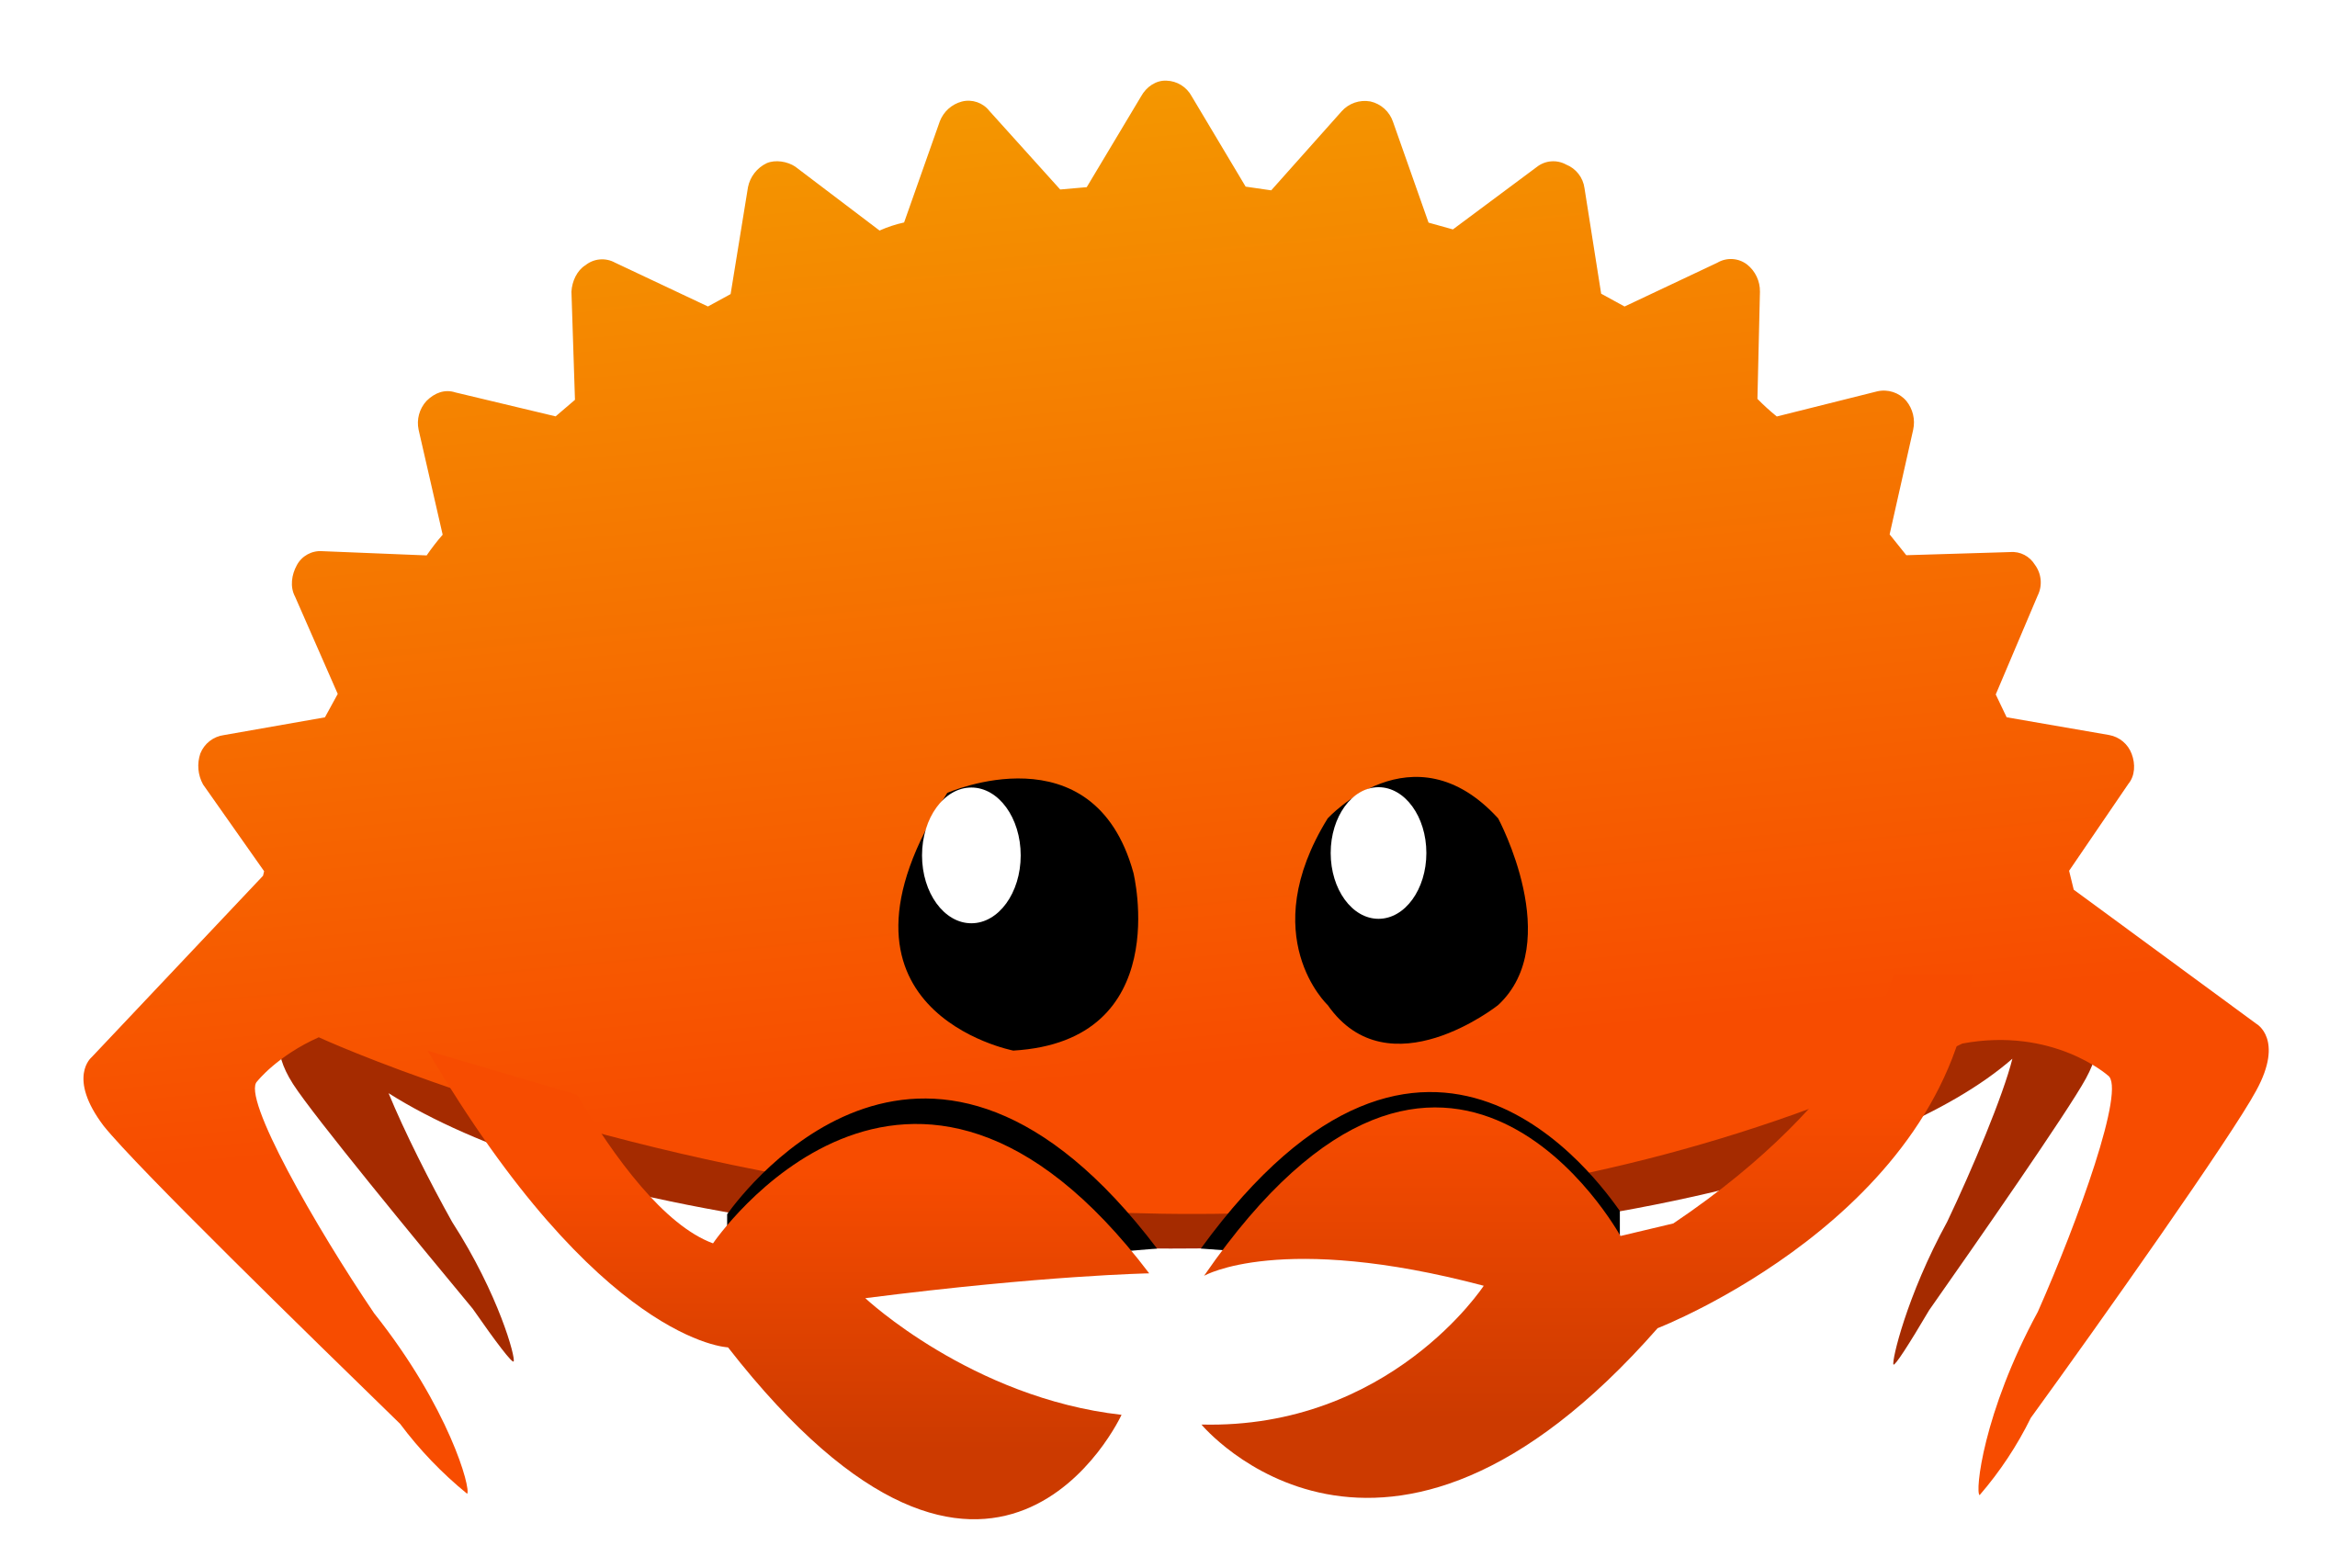 图2.1 有一些外国的程序员朋友就把那个橙色的螃蟹Ferris当做Rust程序员的非官方吉祥物